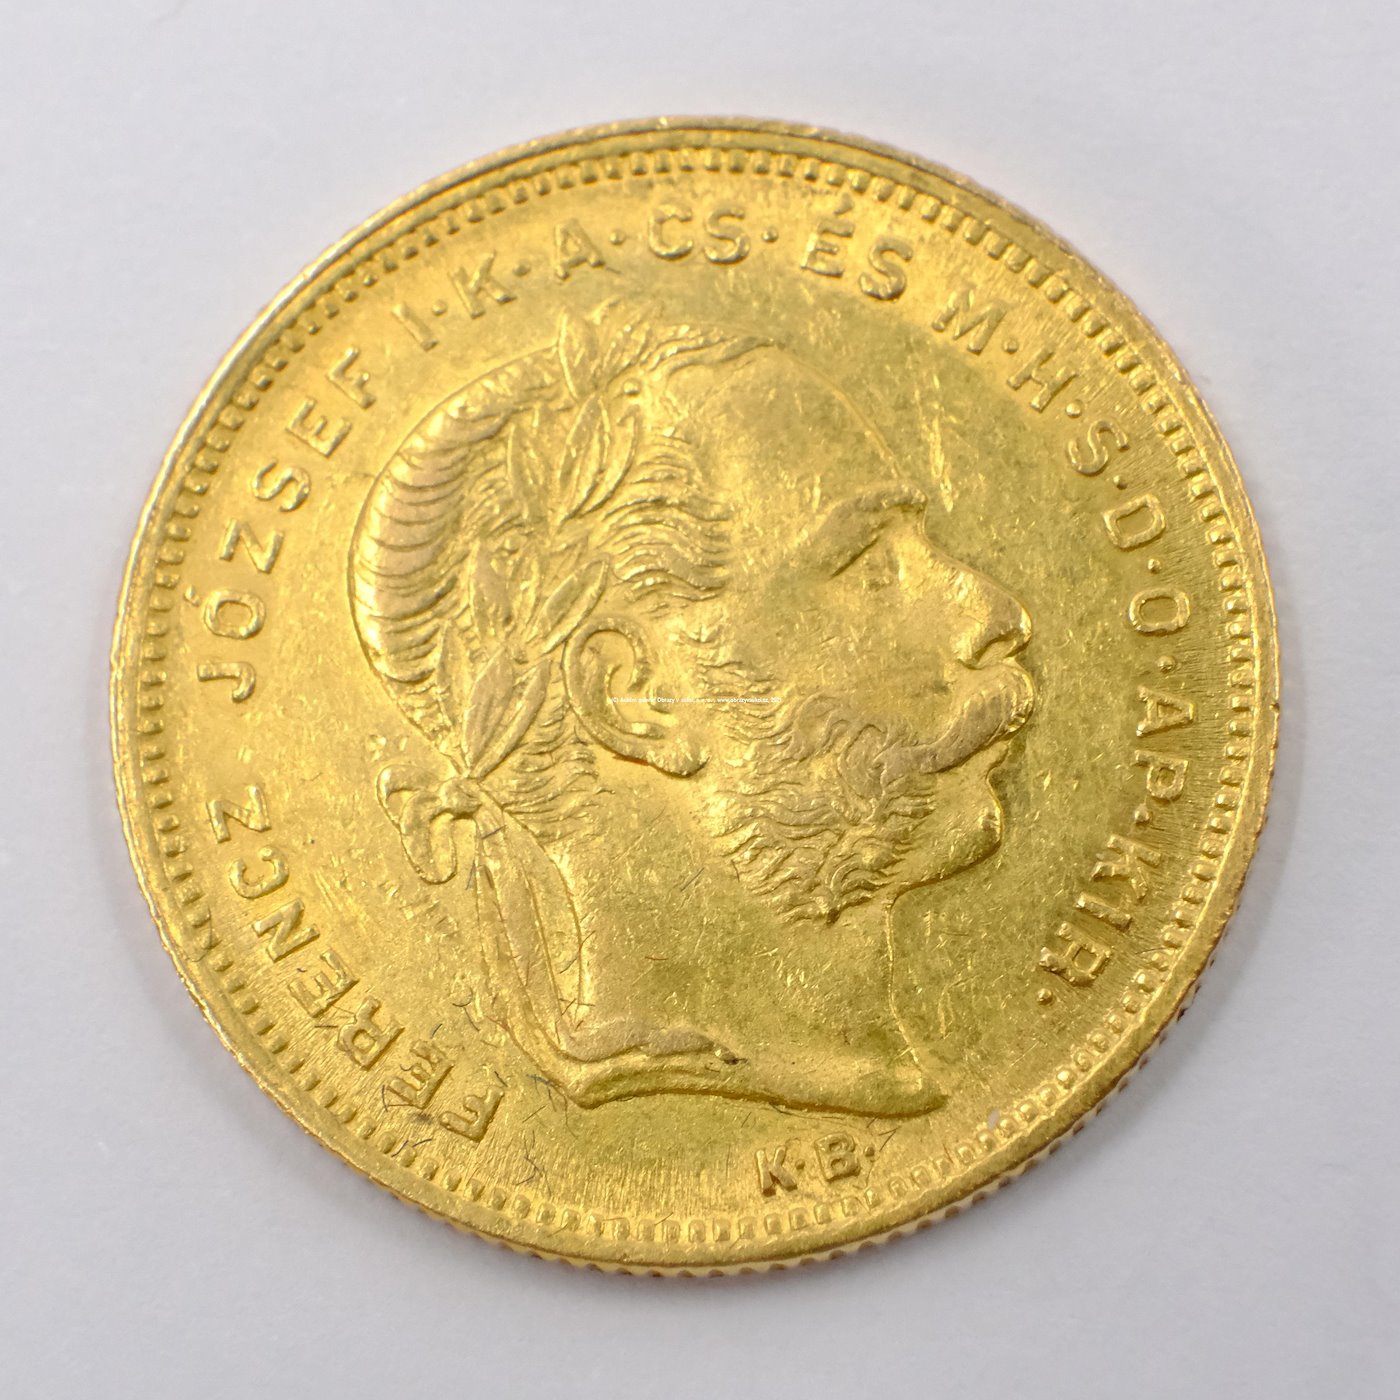 .. - Rakousko Uhersko zlatý 8 zlatník/20frank 1878 uherský. Zlato 900/1000, hrubá hmotnost mince 6,452g